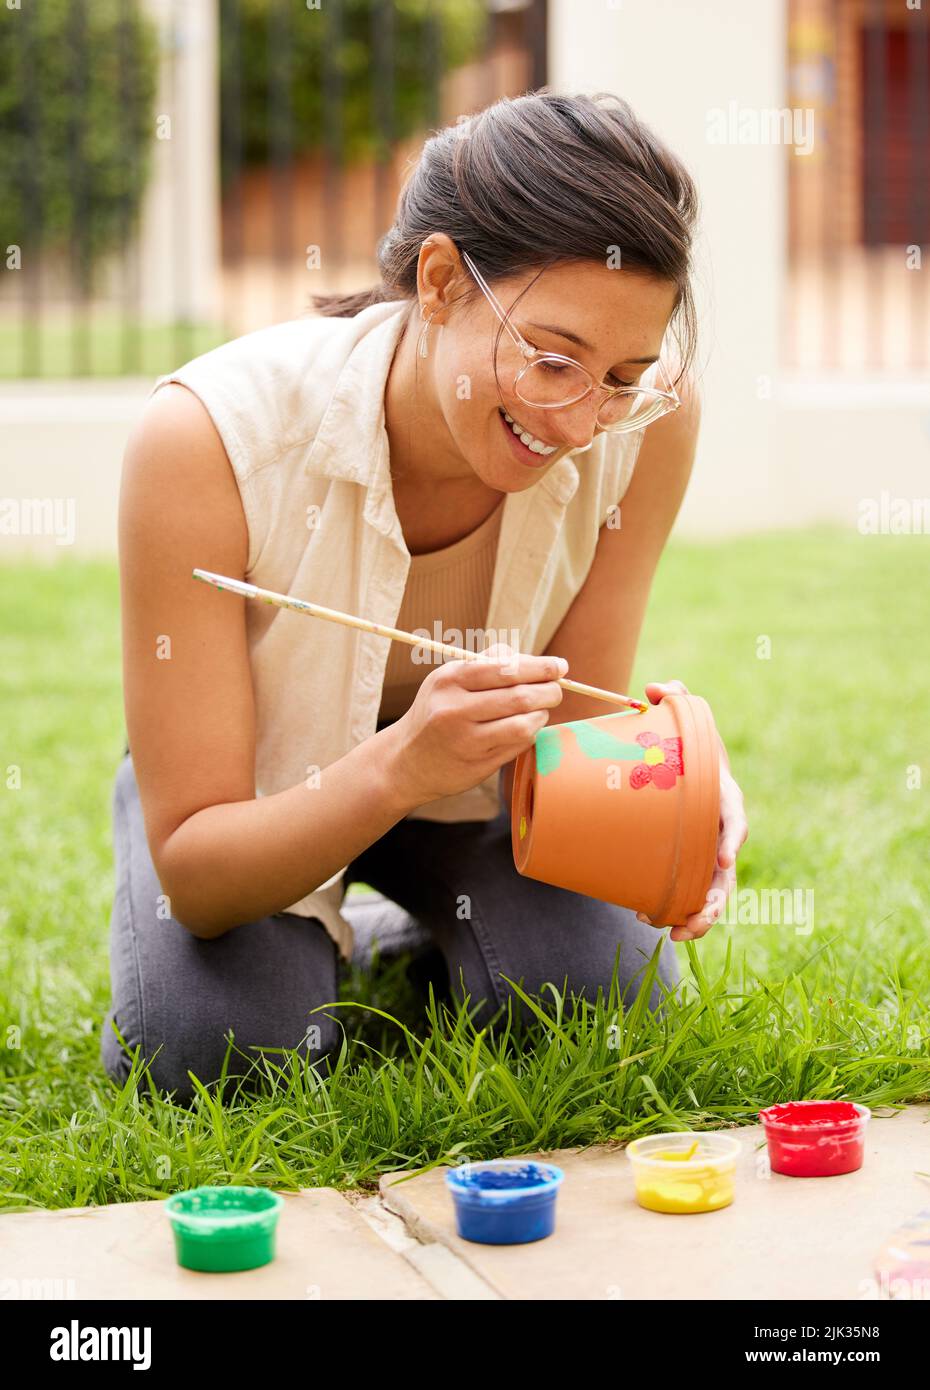 L imagination est le début de la création. S jeune femme peint un pot dans le jardin à la maison. Banque D'Images